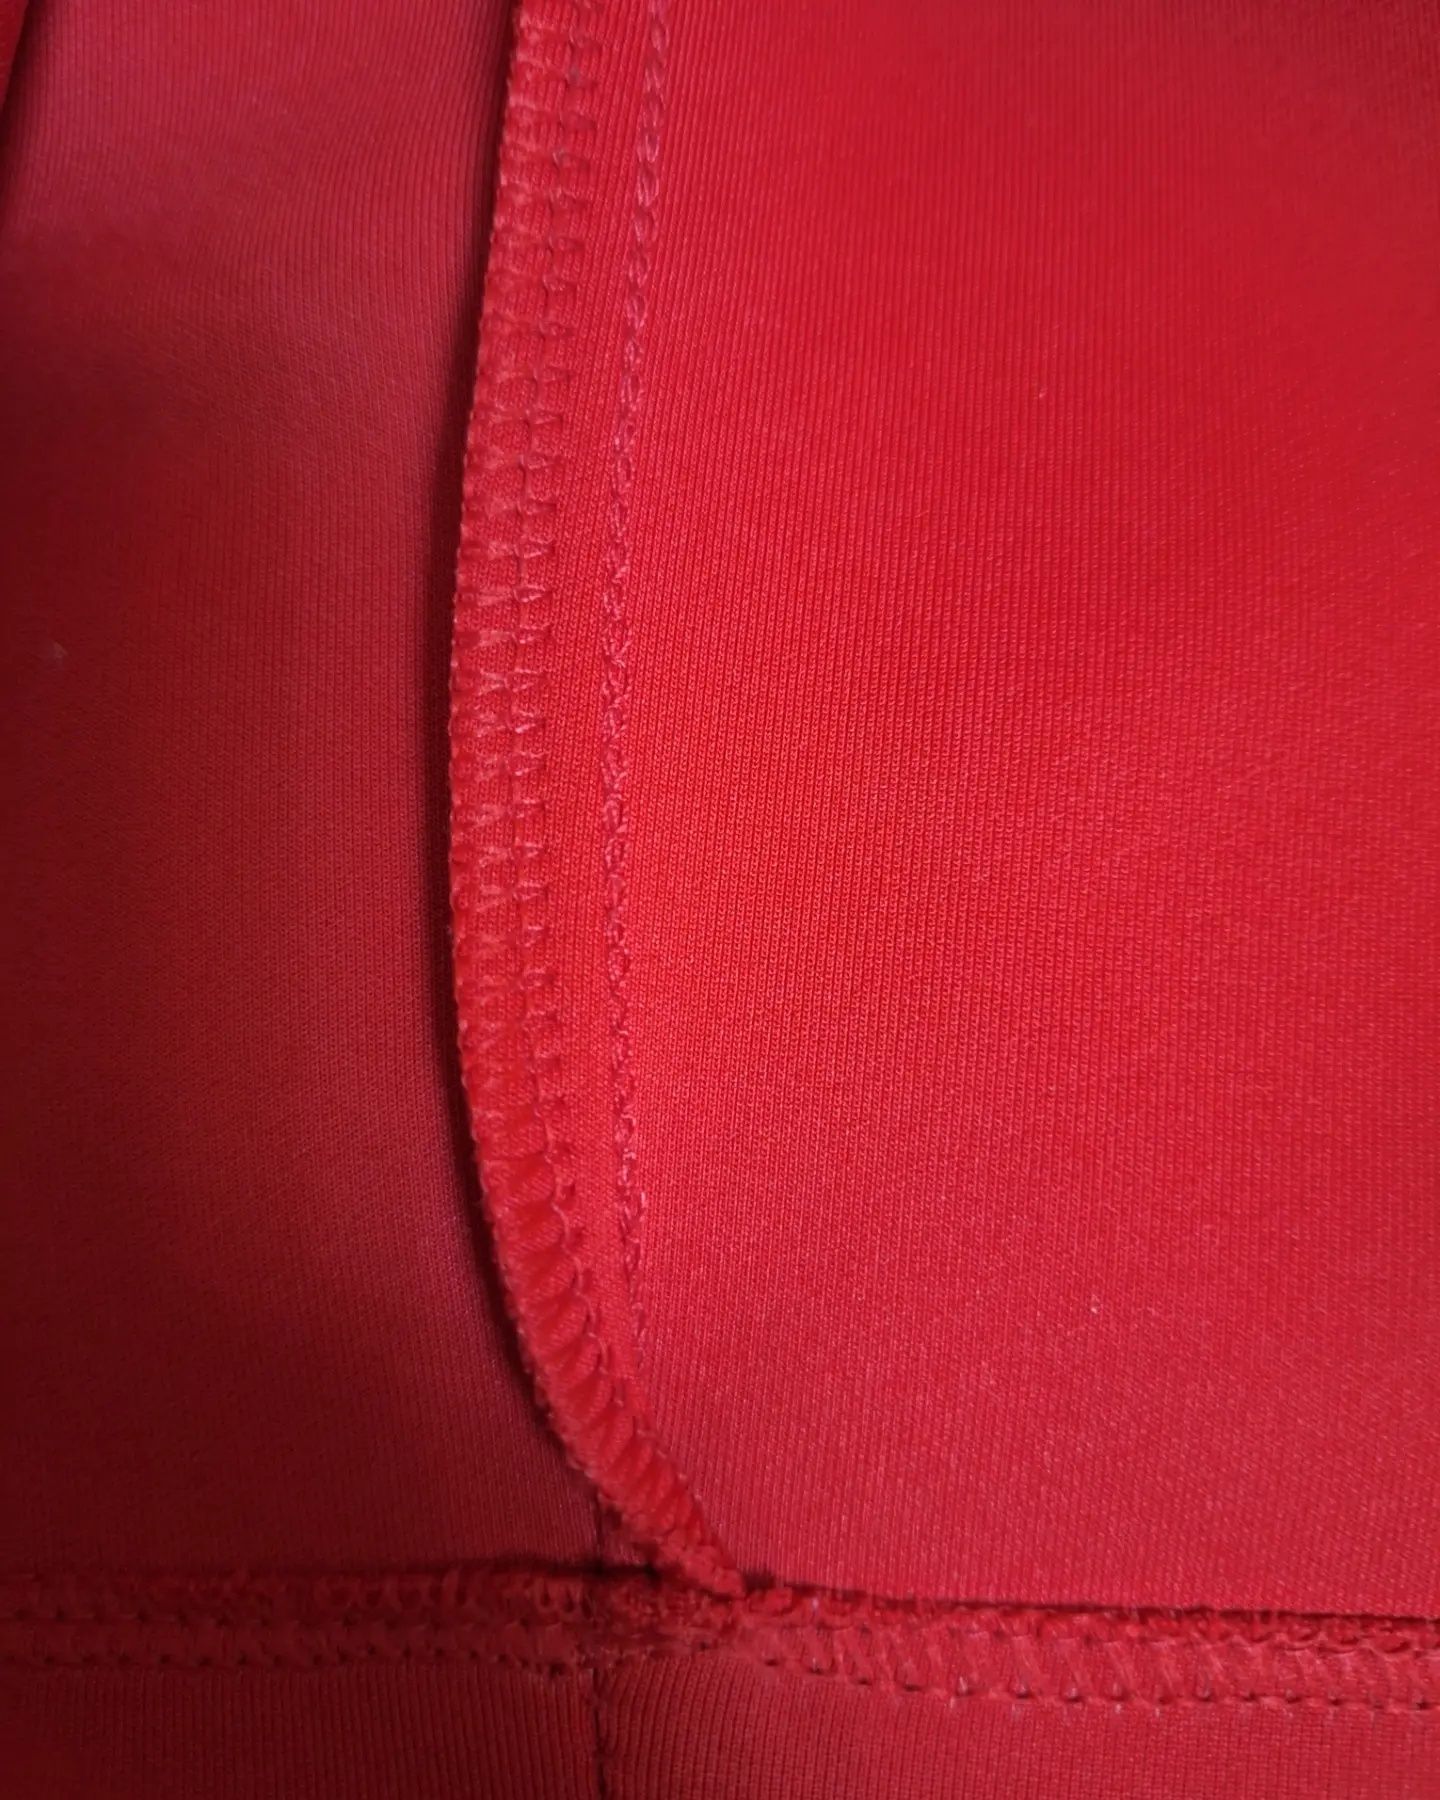 Красное платье от бренда BIES&B8
Размер: 36(тур)
Состояние: хорошее, н